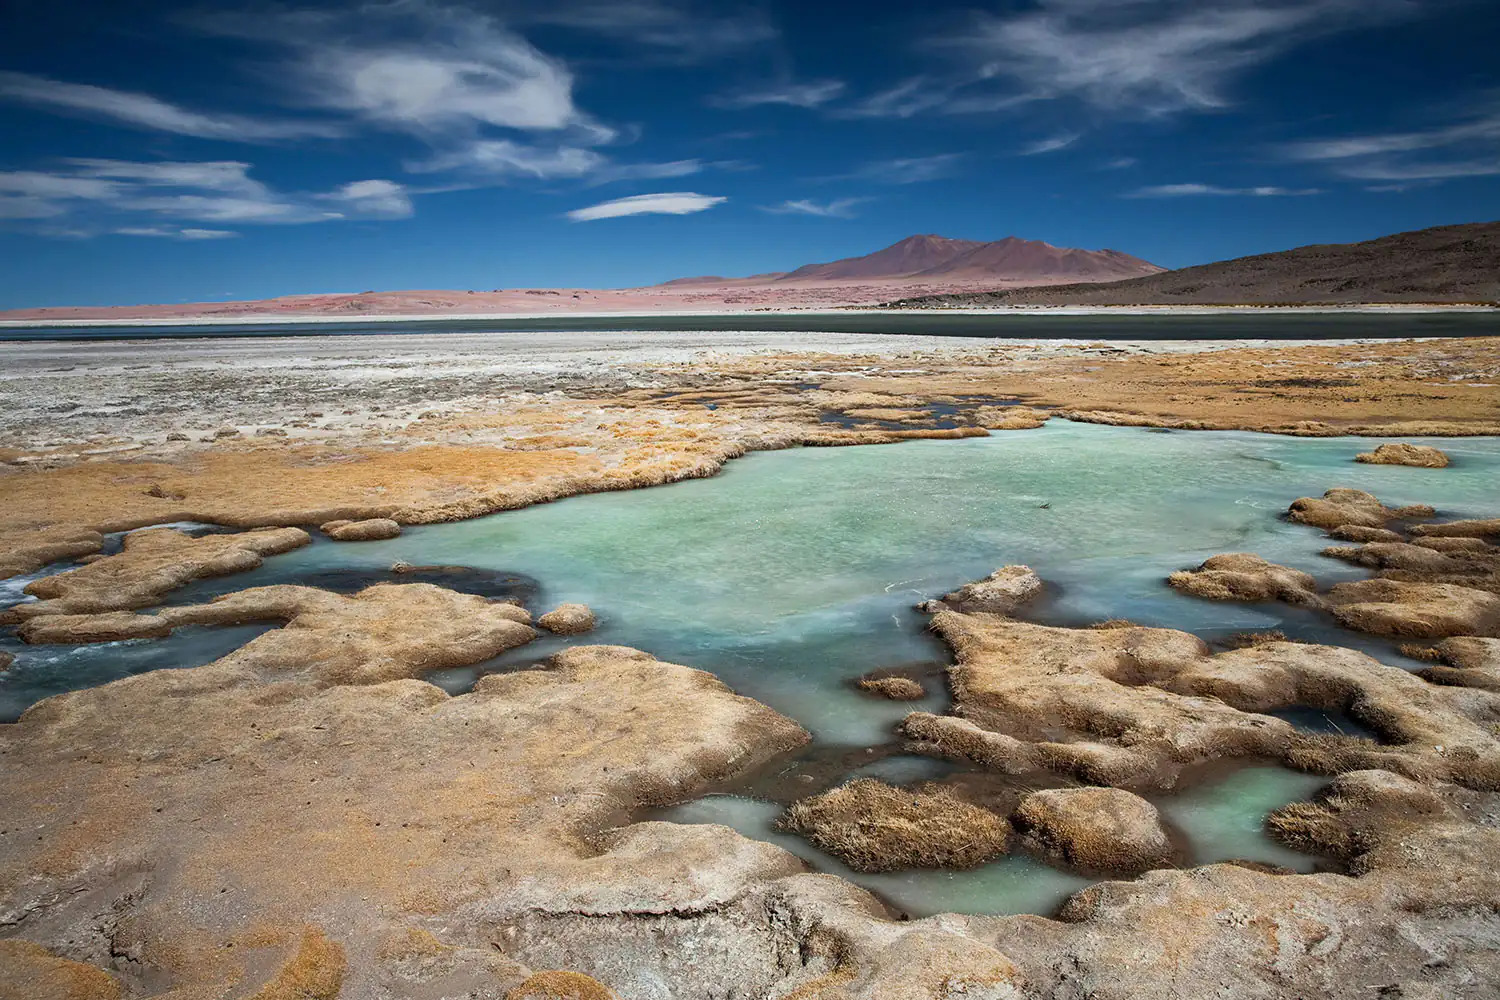 Il deserto di Atacama